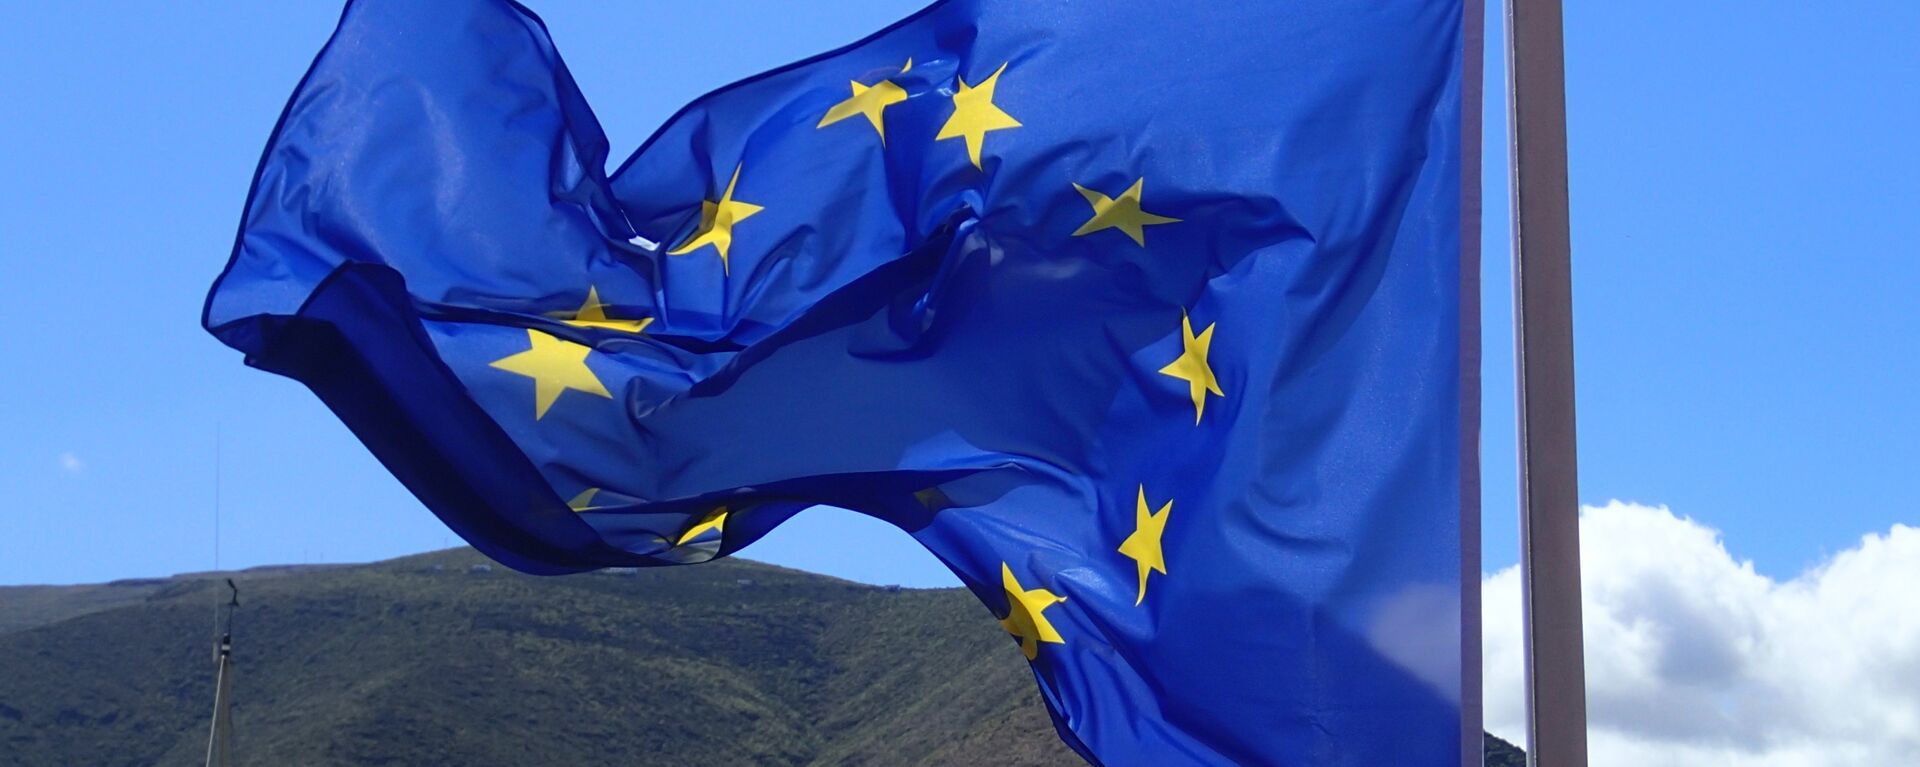 Bandera de la Unión Europea - Sputnik Mundo, 1920, 22.10.2021